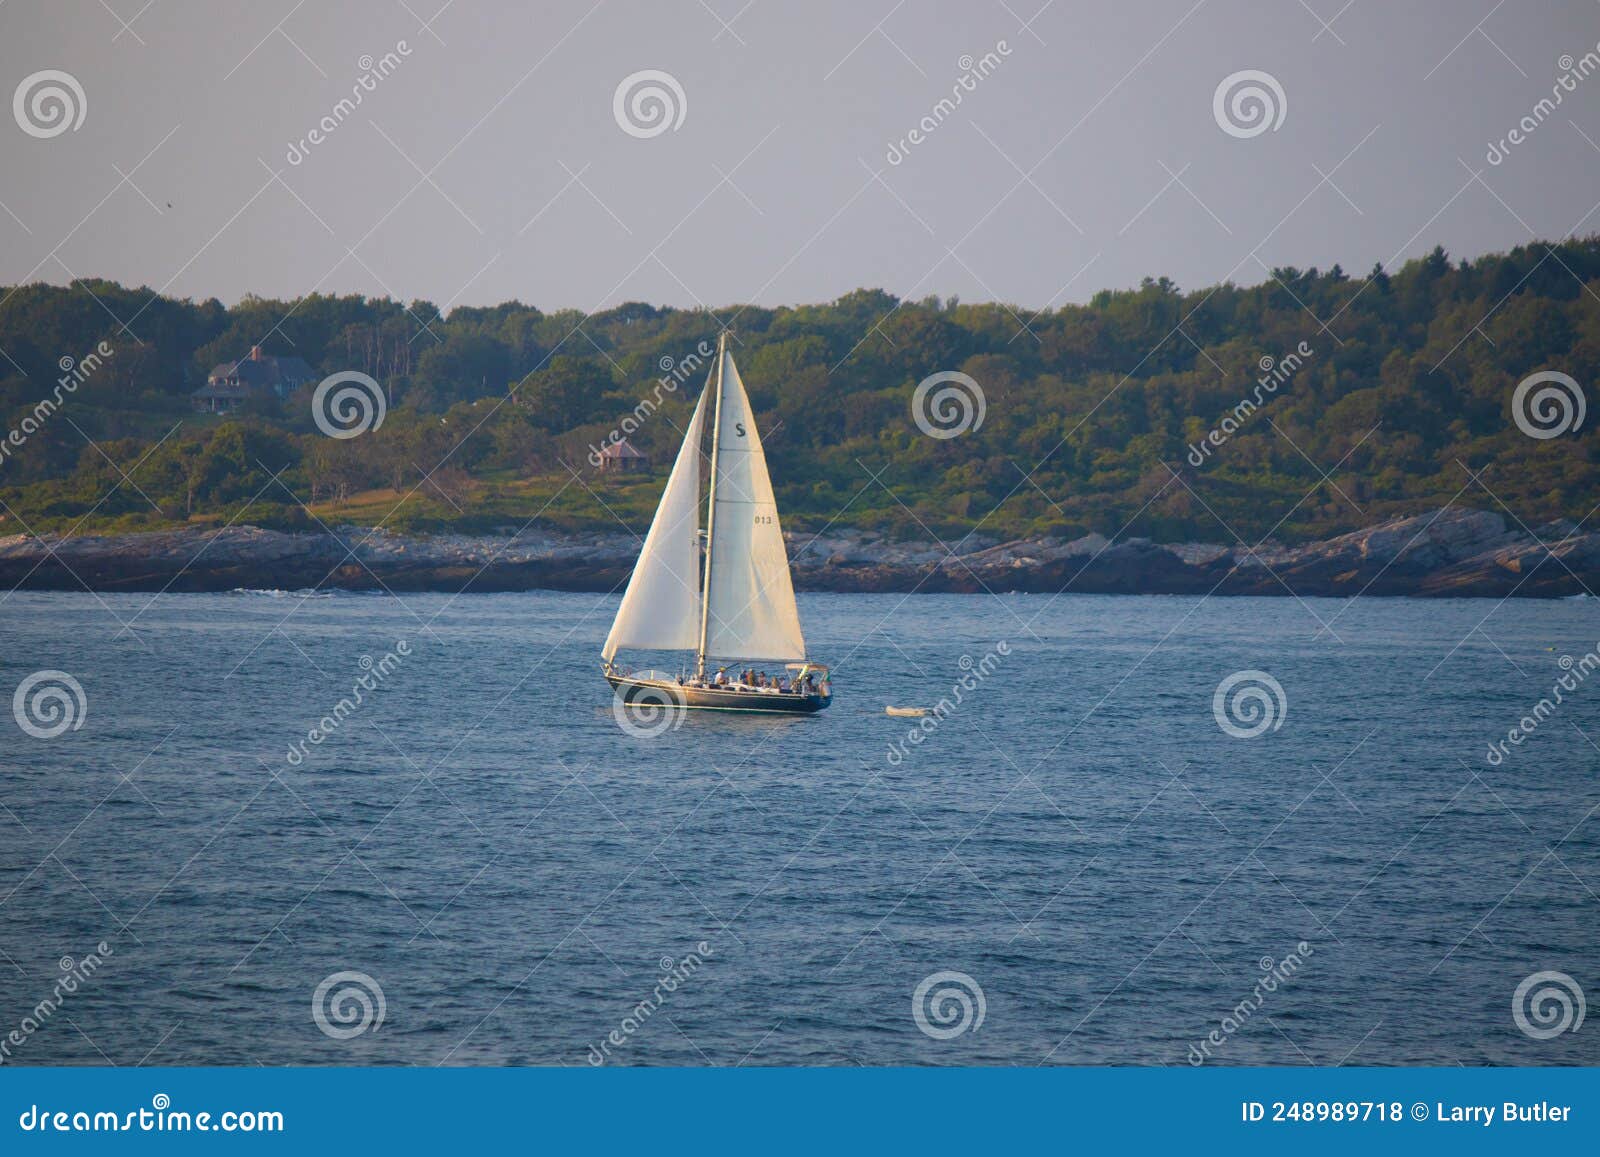 sailboat slowly drifting across the bay